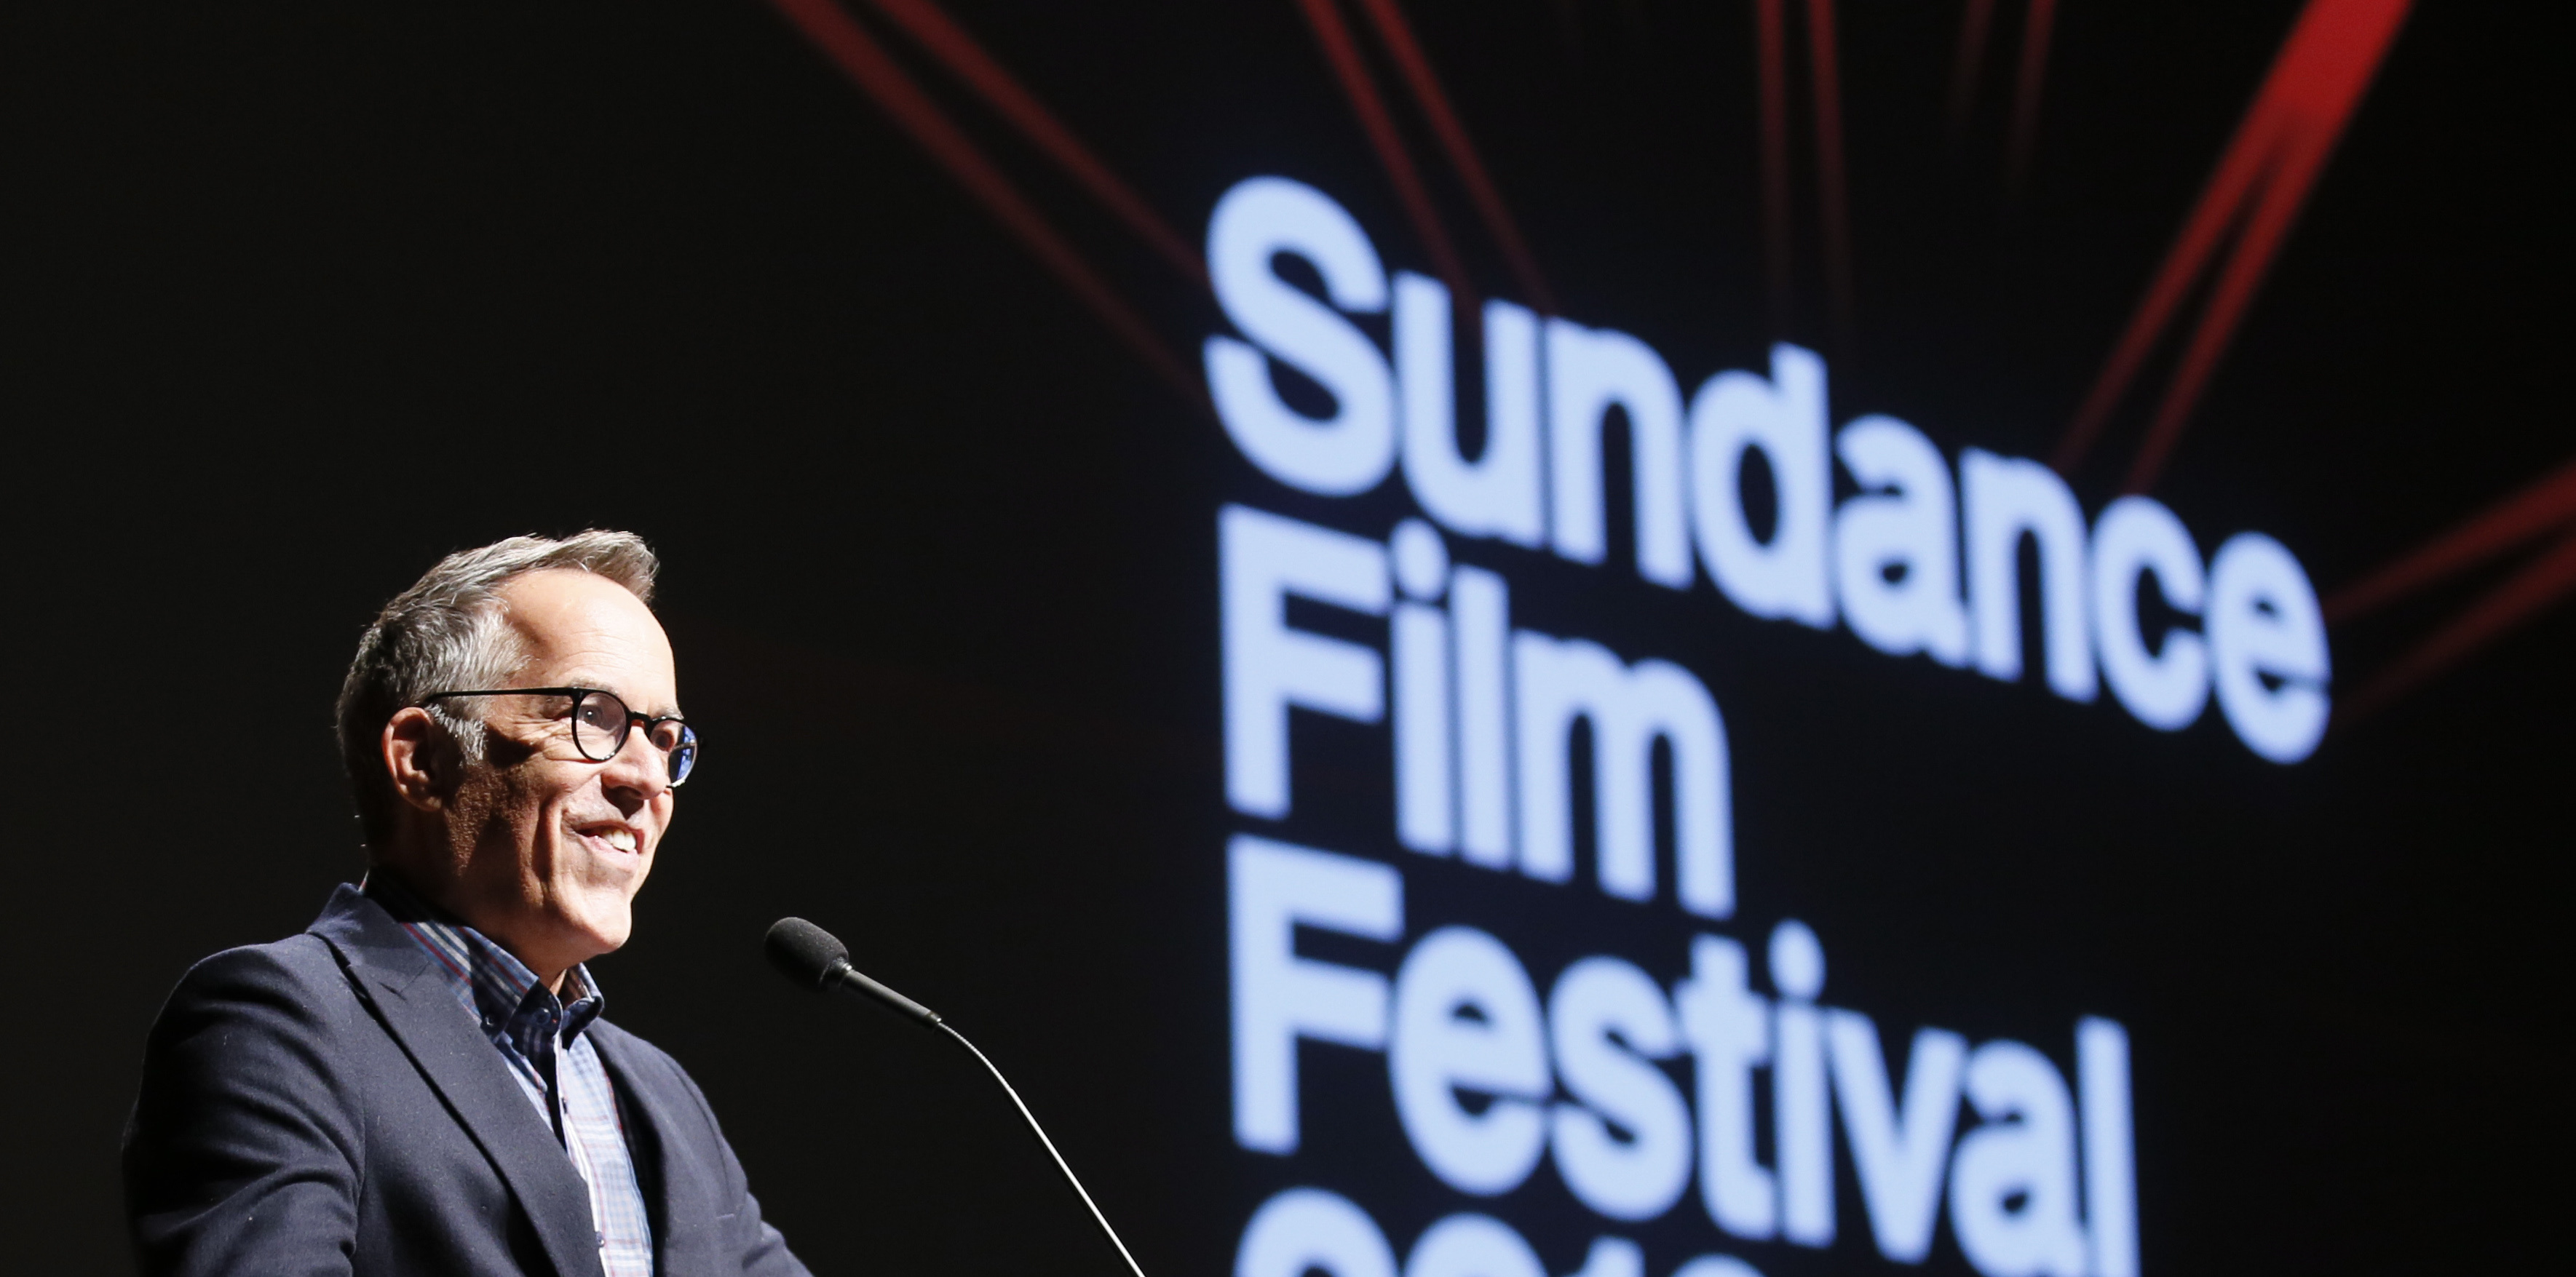 Sundance Film Festival, Leaving festival, Robert Redford, Deadline, 3540x1760 Dual Screen Desktop